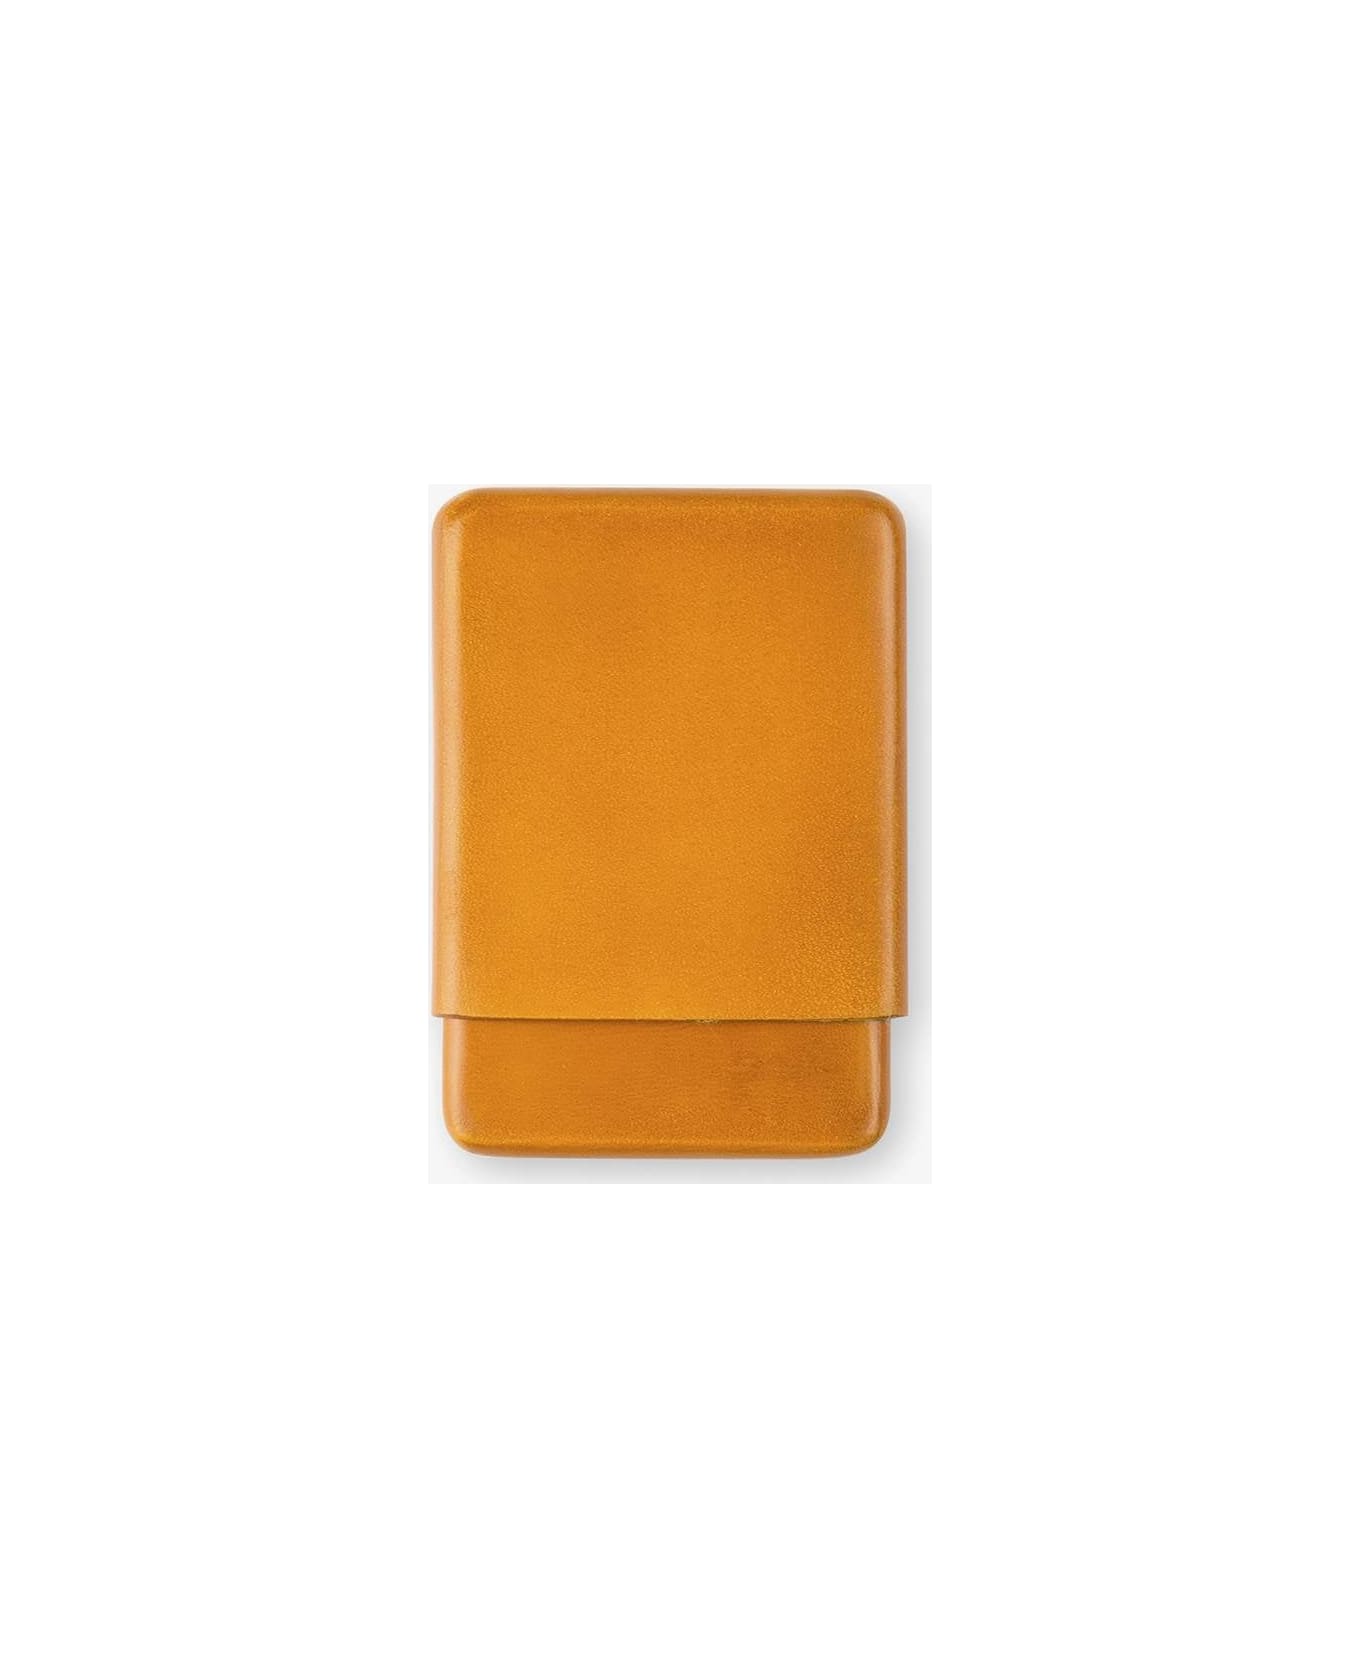 Larusmiani Cardholder Wallet - Goldenrod